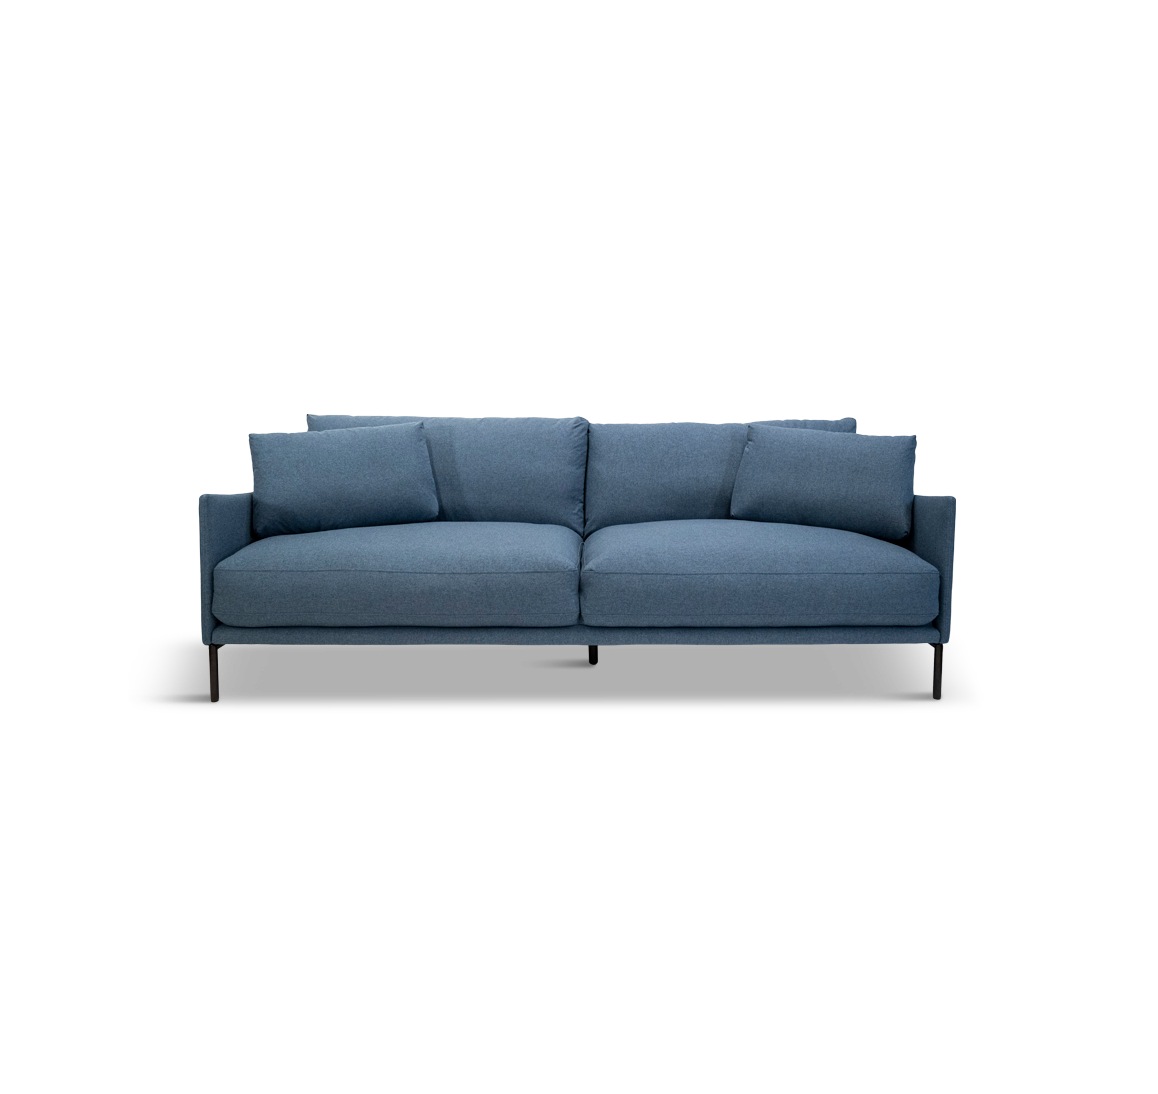 Aruba Indigo Sofa - Fashion Furniture Rental